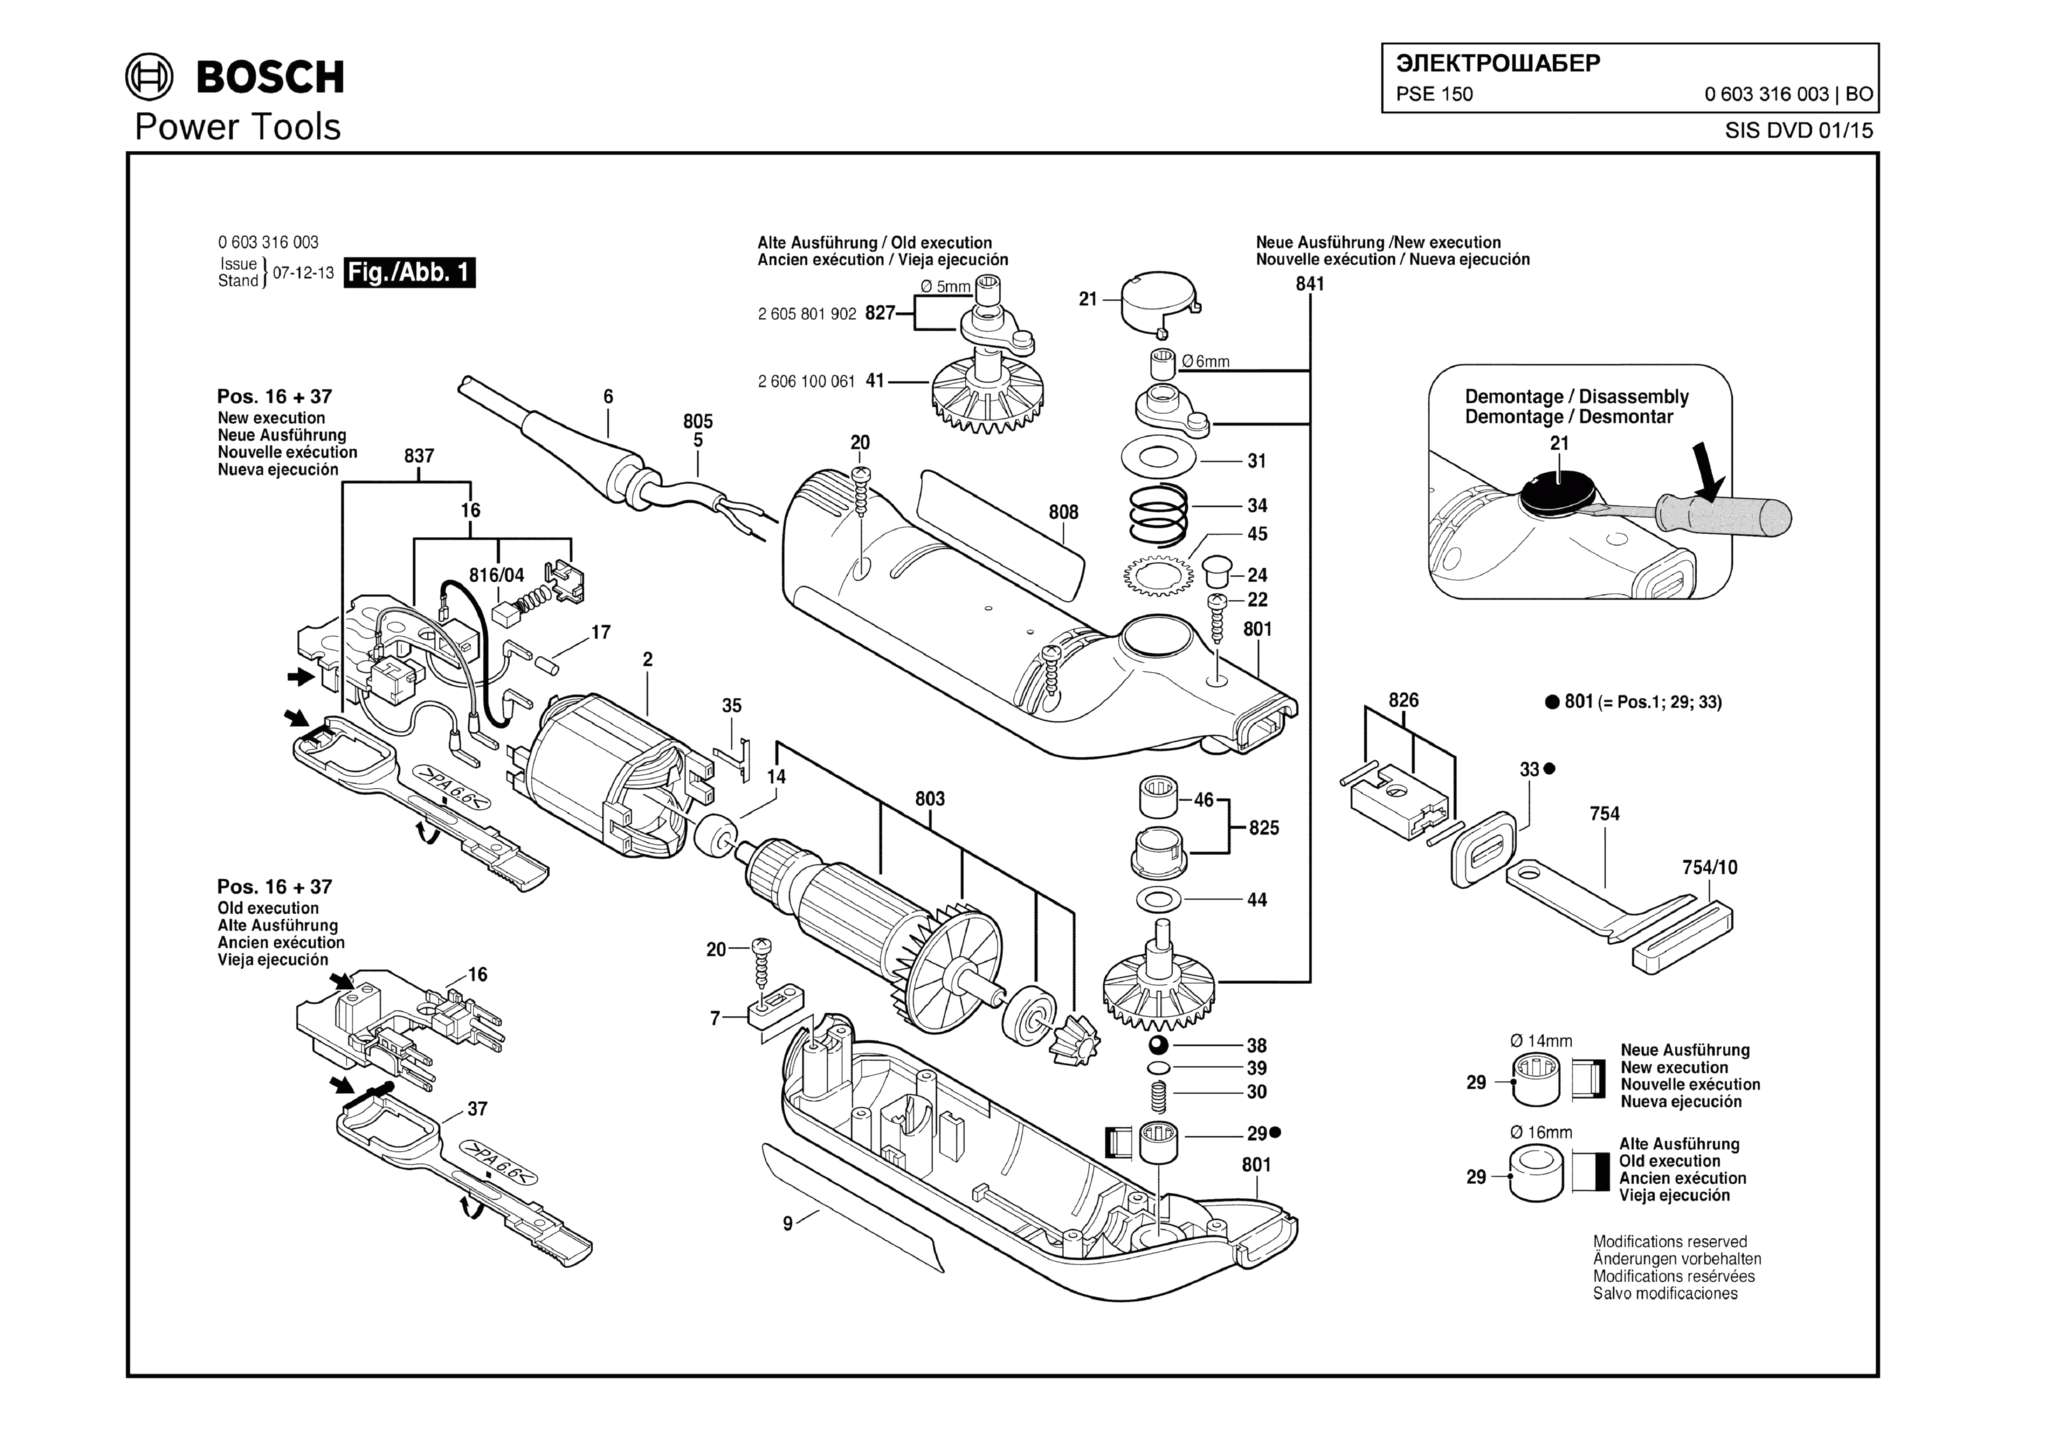 Запчасти, схема и деталировка Bosch PSE 150 (ТИП 0603316003)